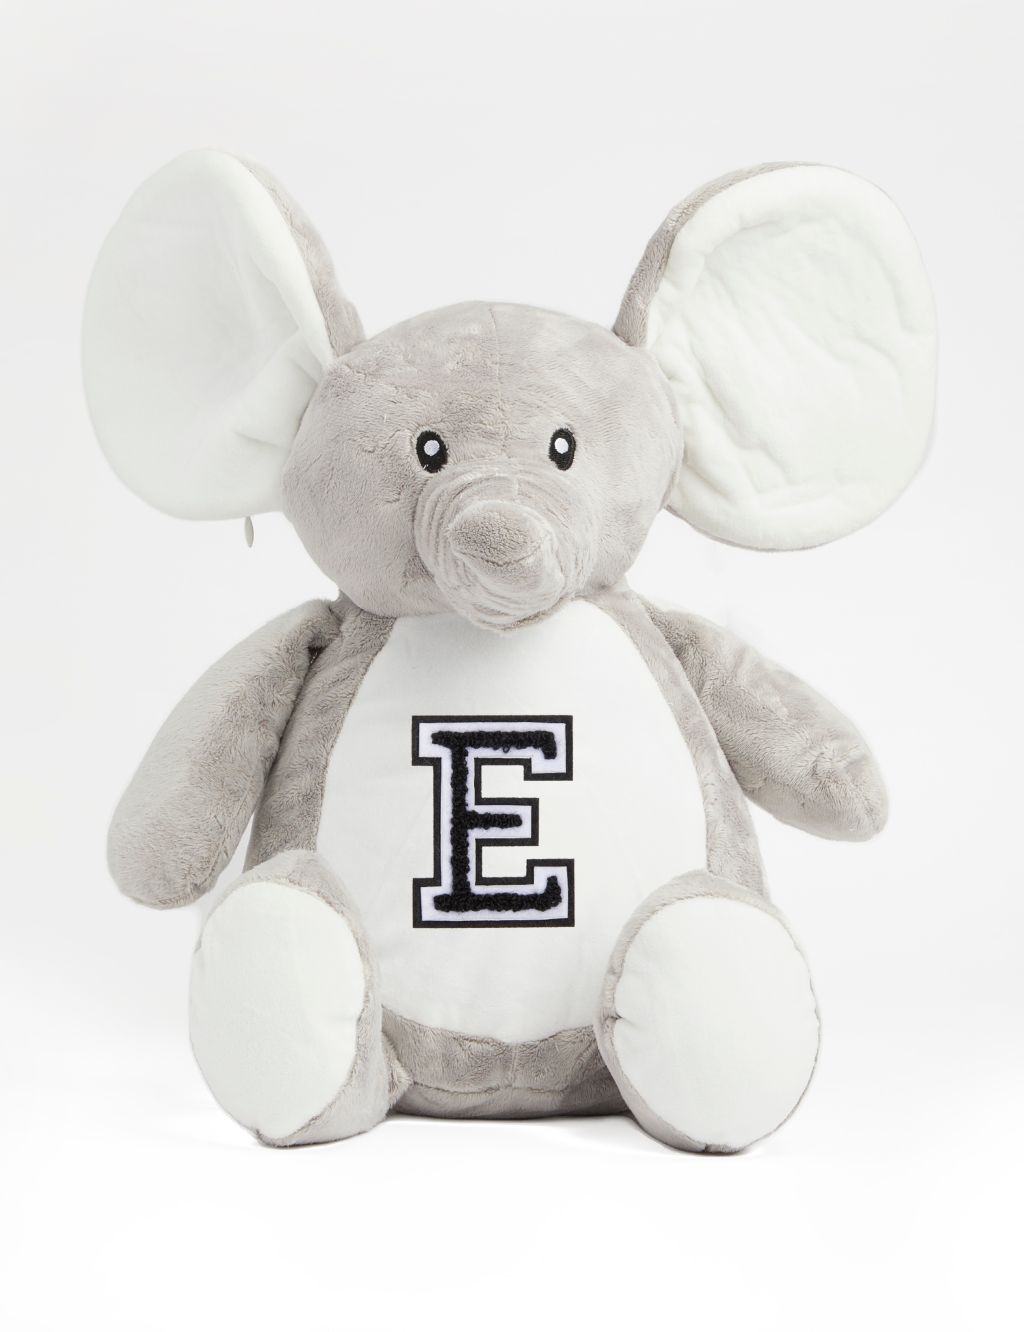 Personalised Soft Plush Elephant